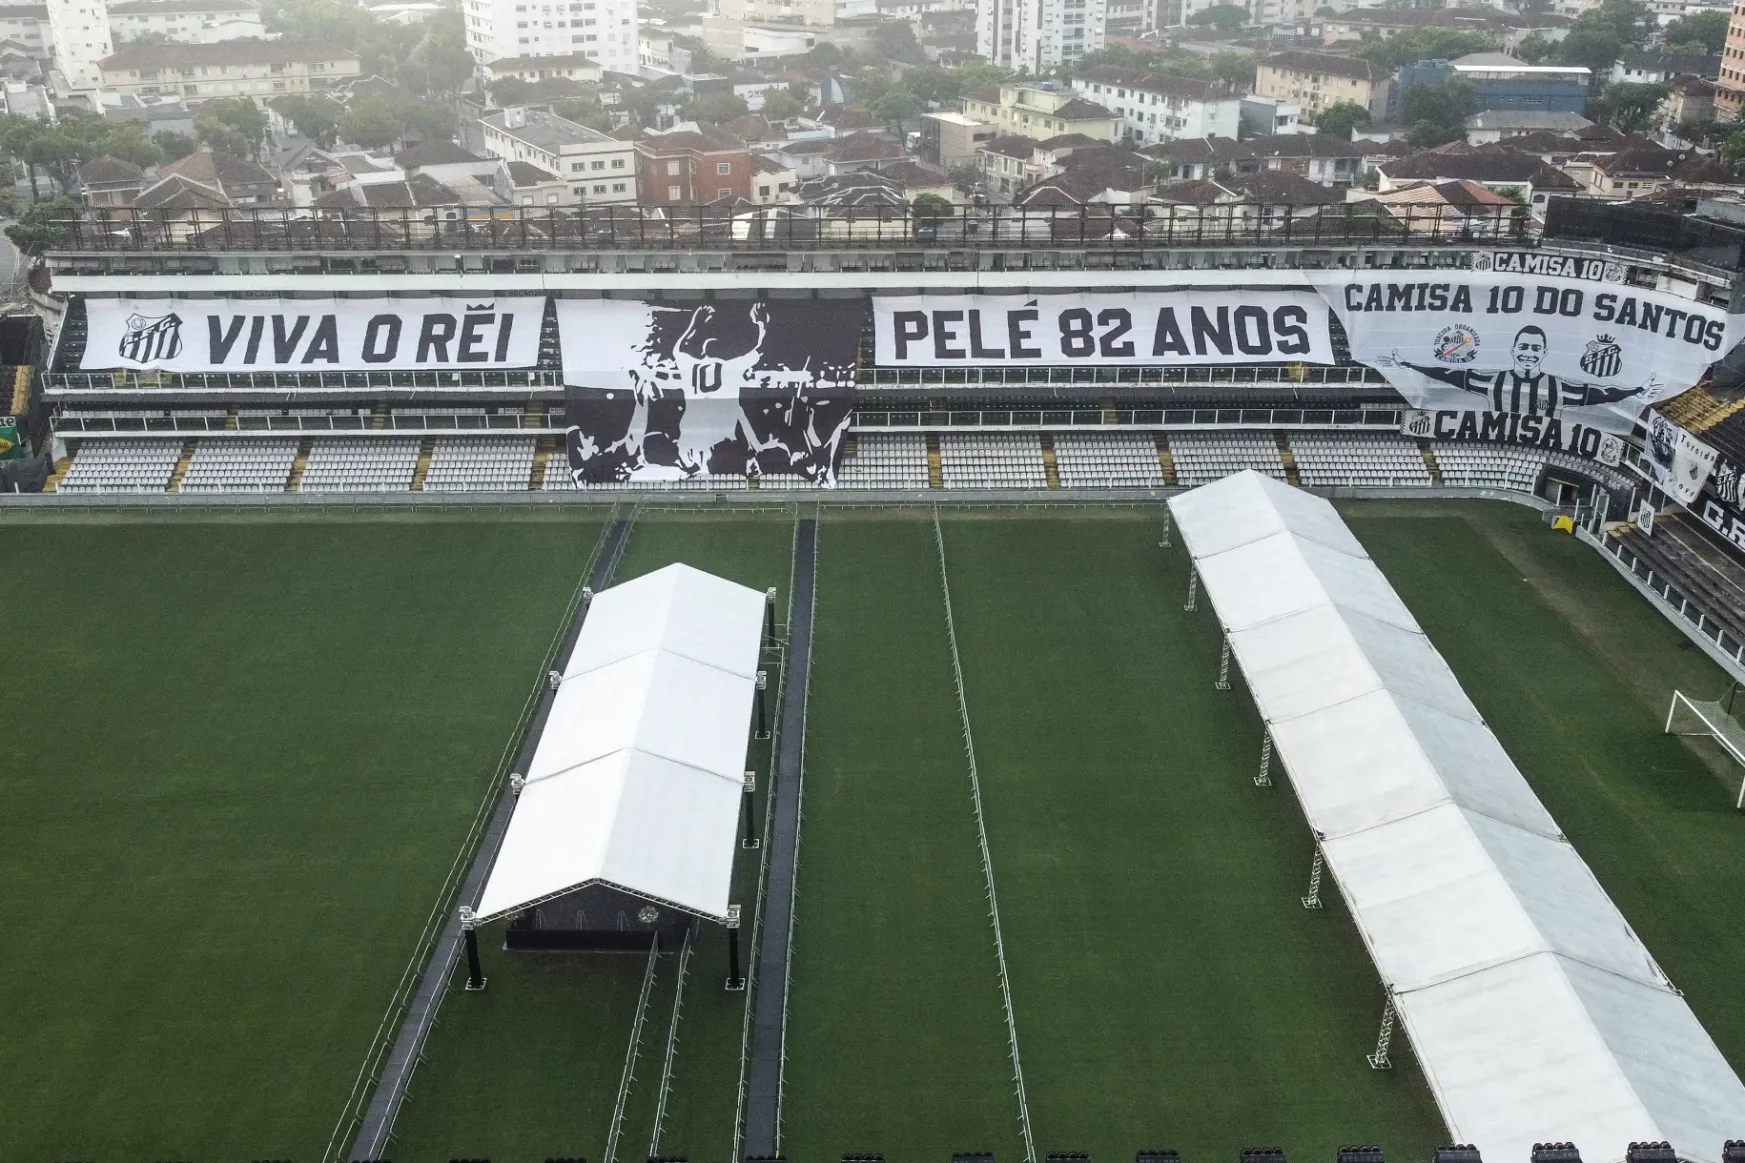 Megérkezett Pelé koporsója a Santos stadionjába